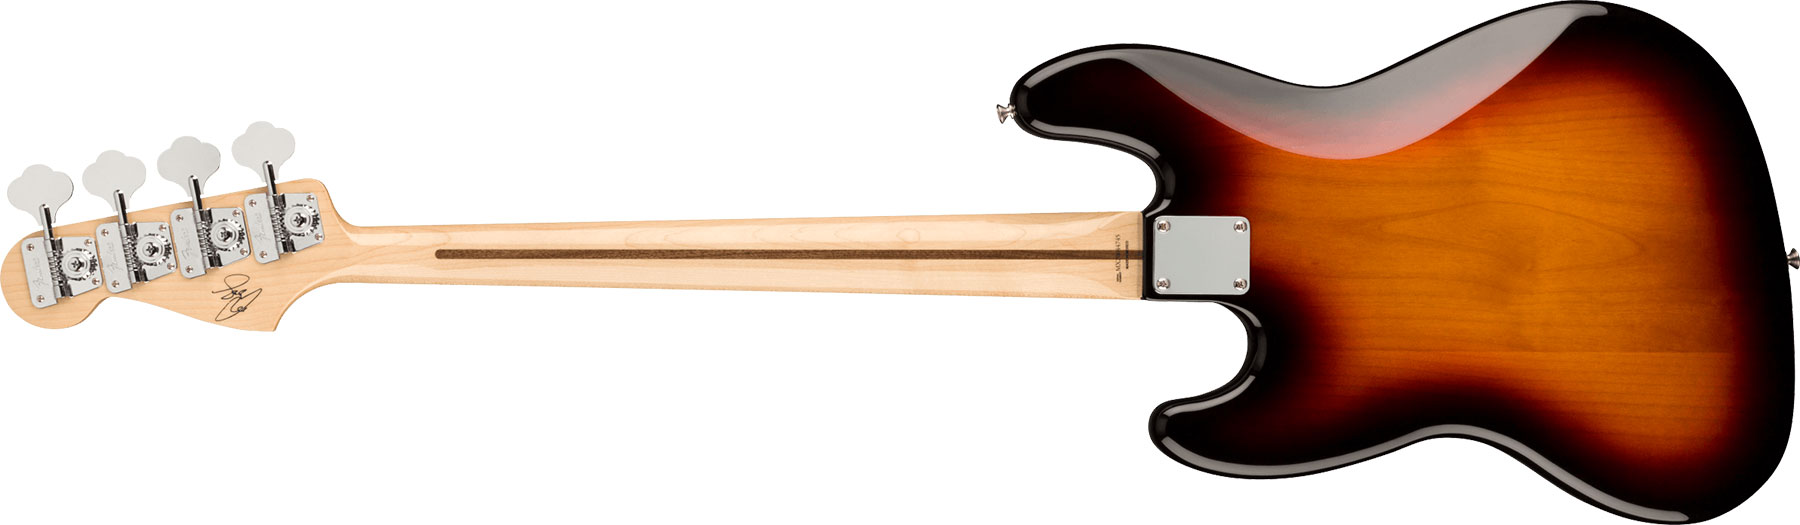 Fender Geddy Lee Jazz Bass Signature Mex Mn - 3-color Sunburst - Solid body elektrische bas - Variation 1